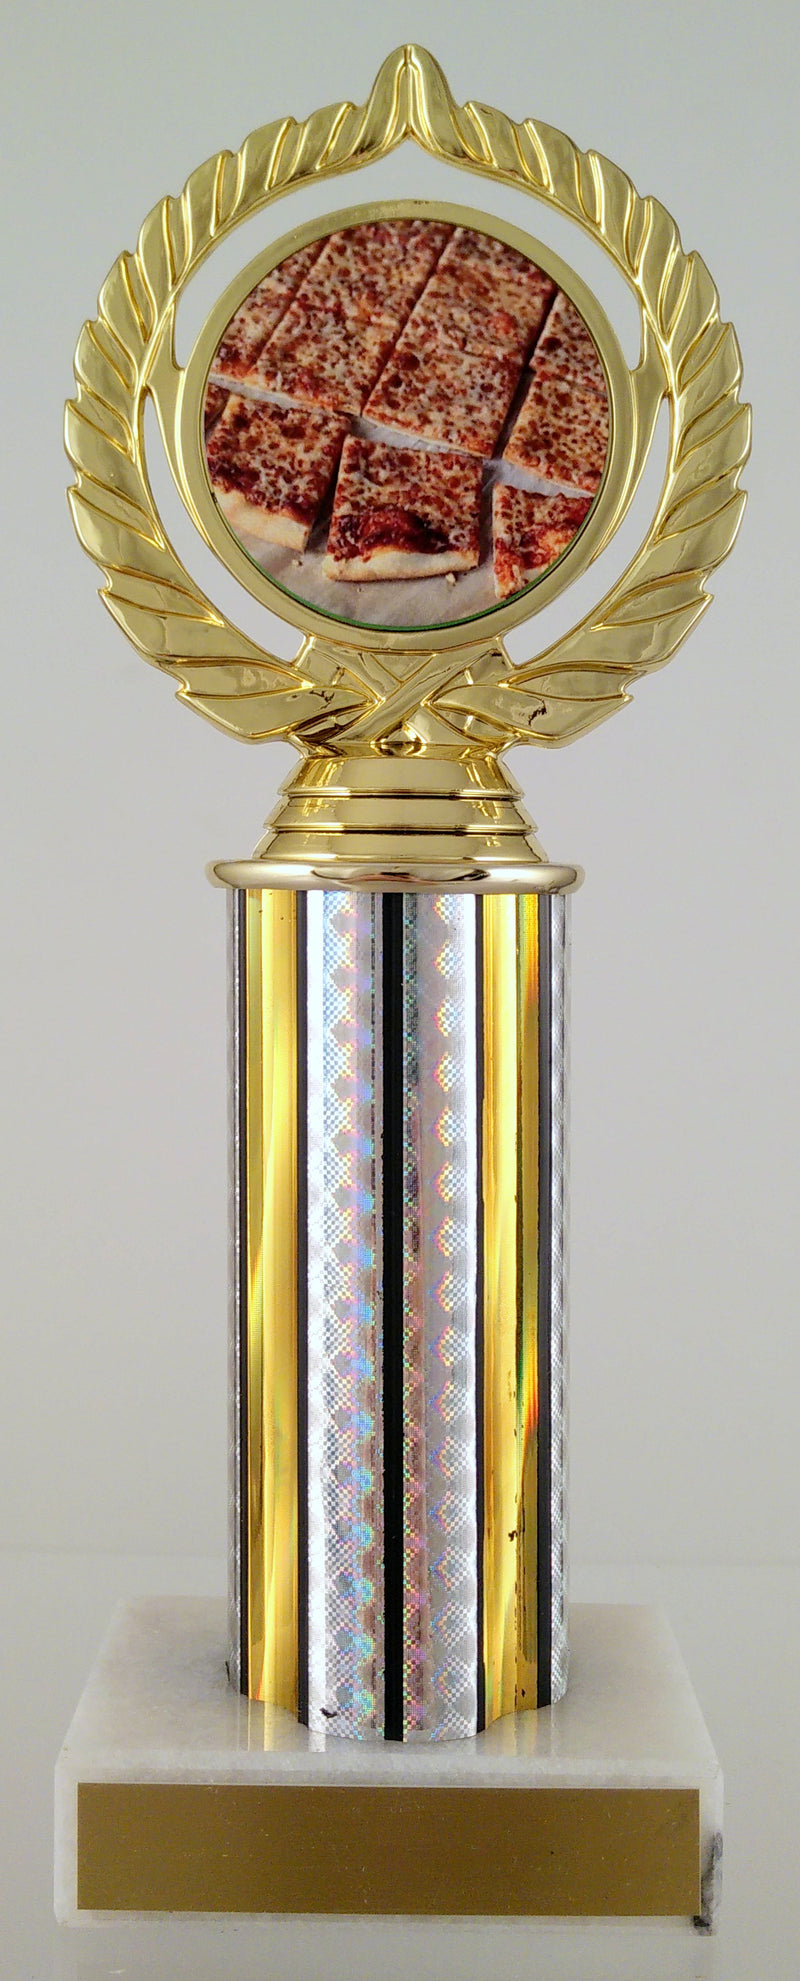 Pizza Logo Trophy On Round Column-Trophy-Schoppy&